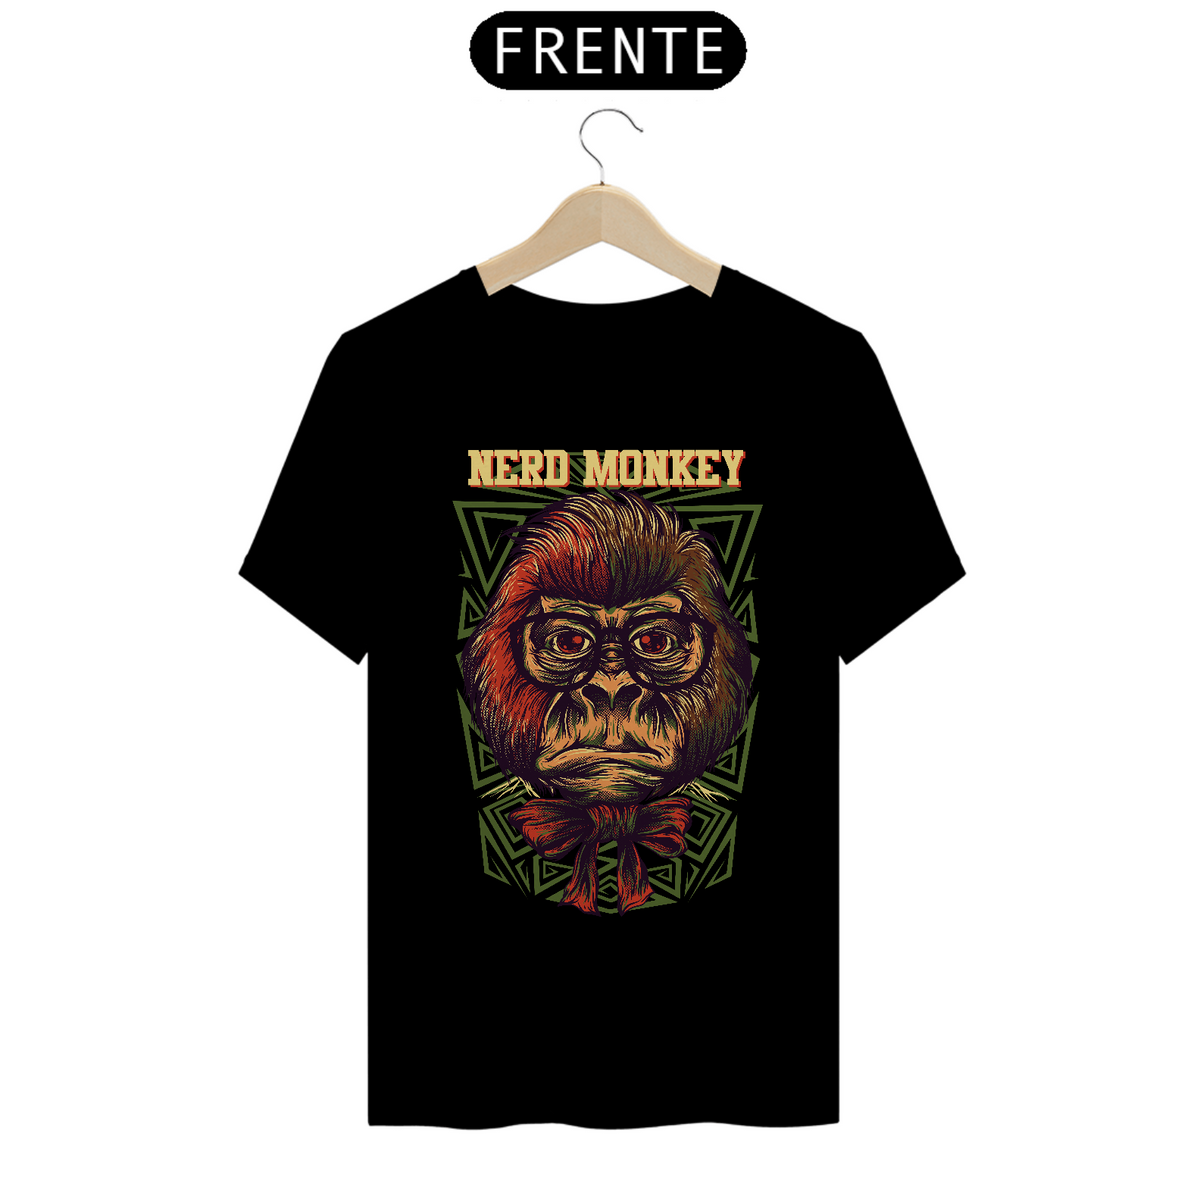 Nome do produto: Camiseta Nerd Monkey